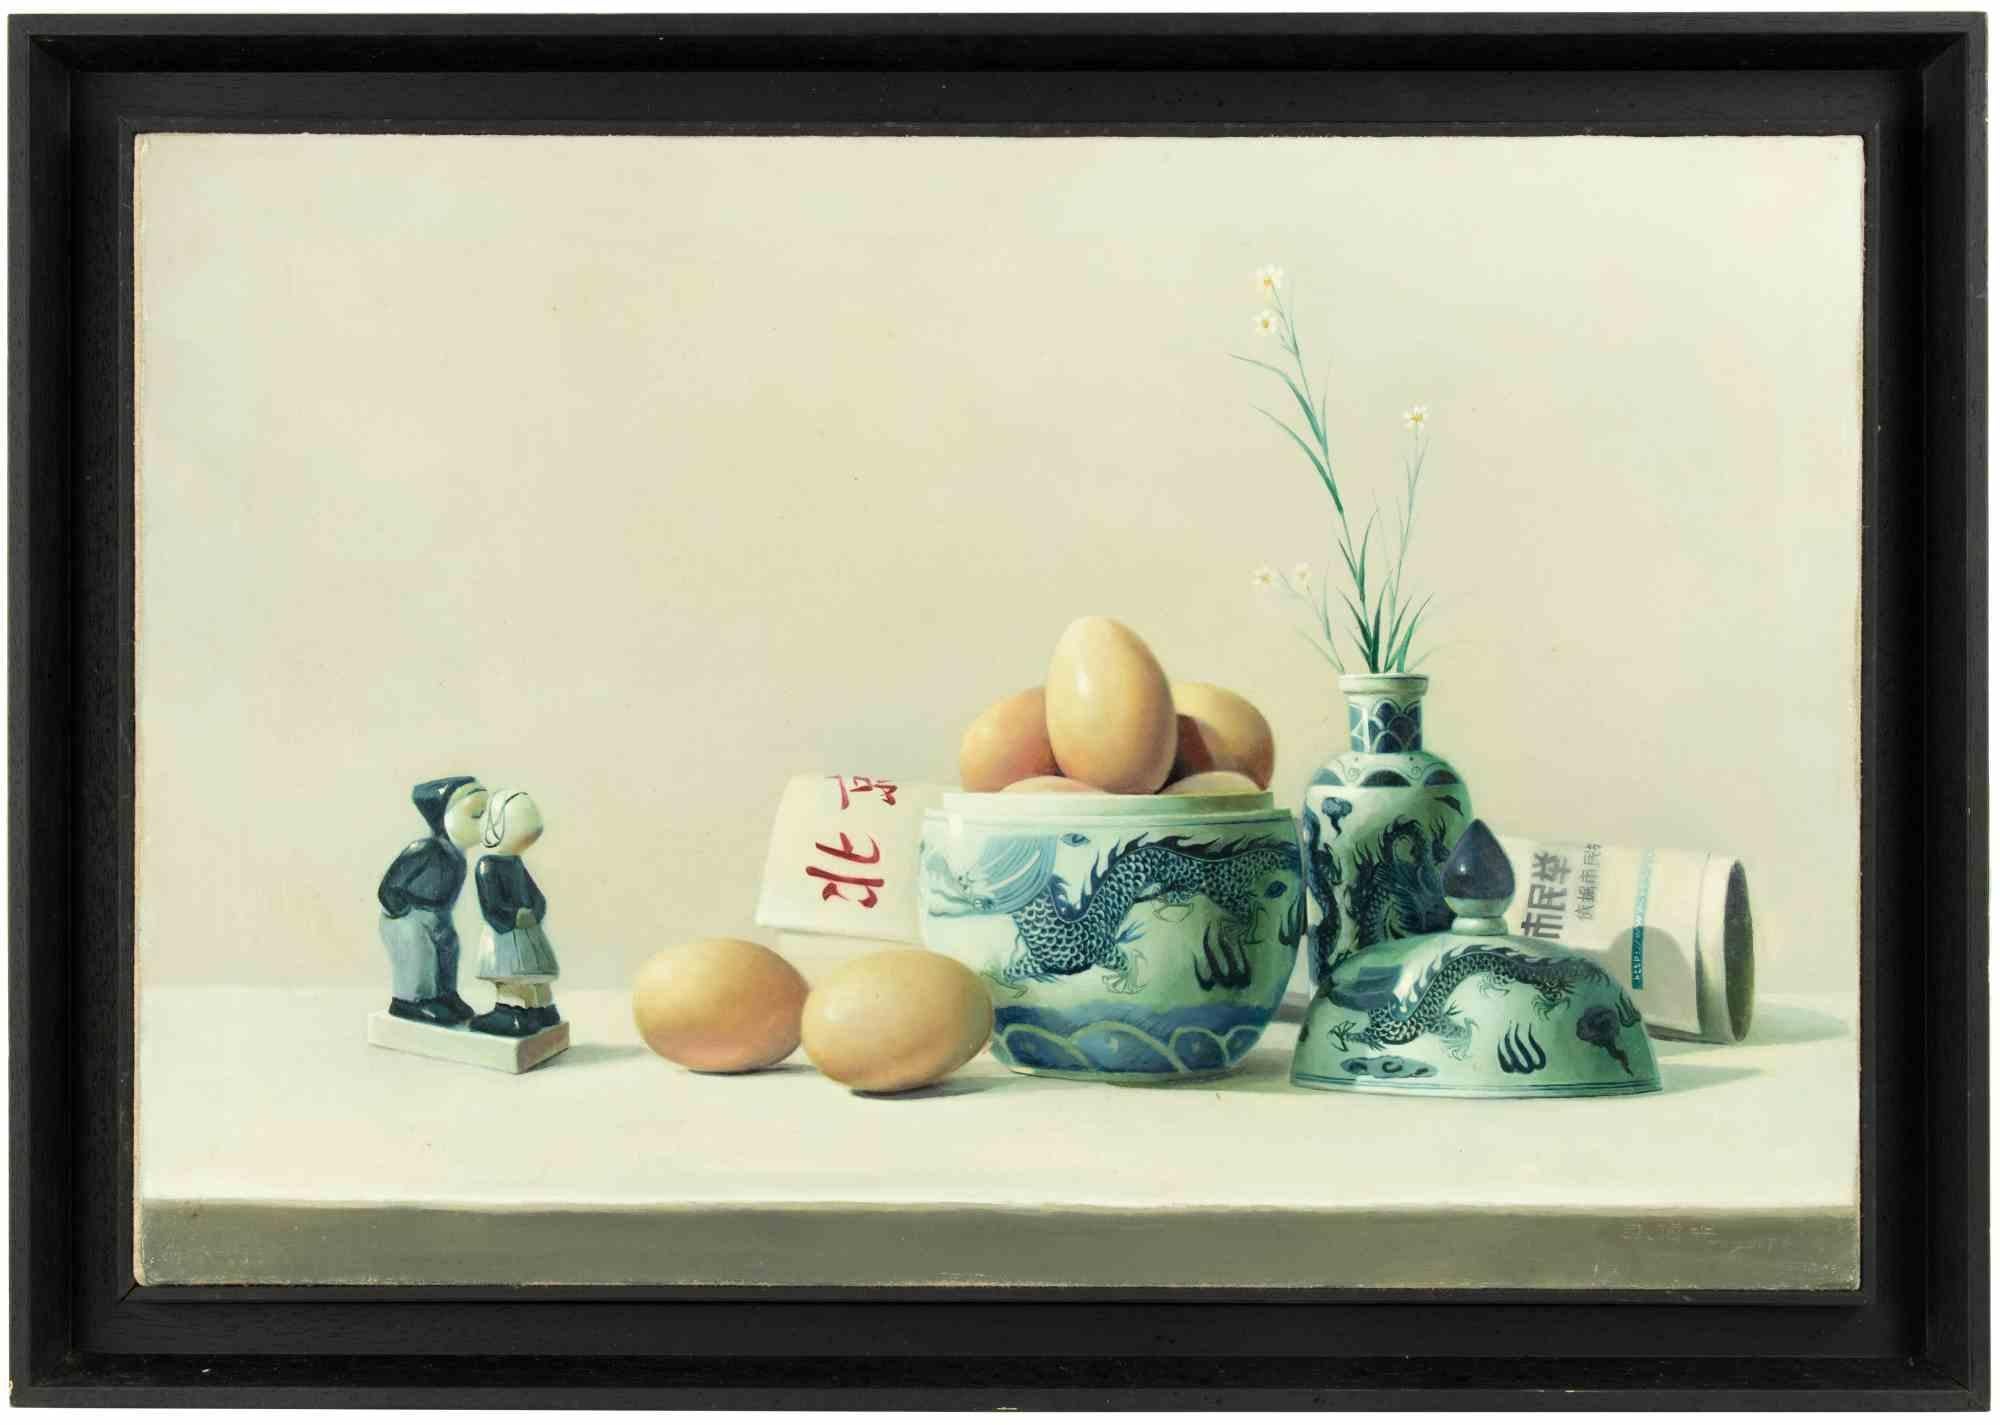 Frühstück ist ein realisiertes Ölgemälde  von Zhang Wei Guang (Mirror) in den 2000er Jahren.

Einschließlich Rahmen.

Signatur und verschiedene Zeichen in chinesischer Kalligrafie auf der Rückseite.

Sehr guter Zustand.

Zhang Wei Guang , auch